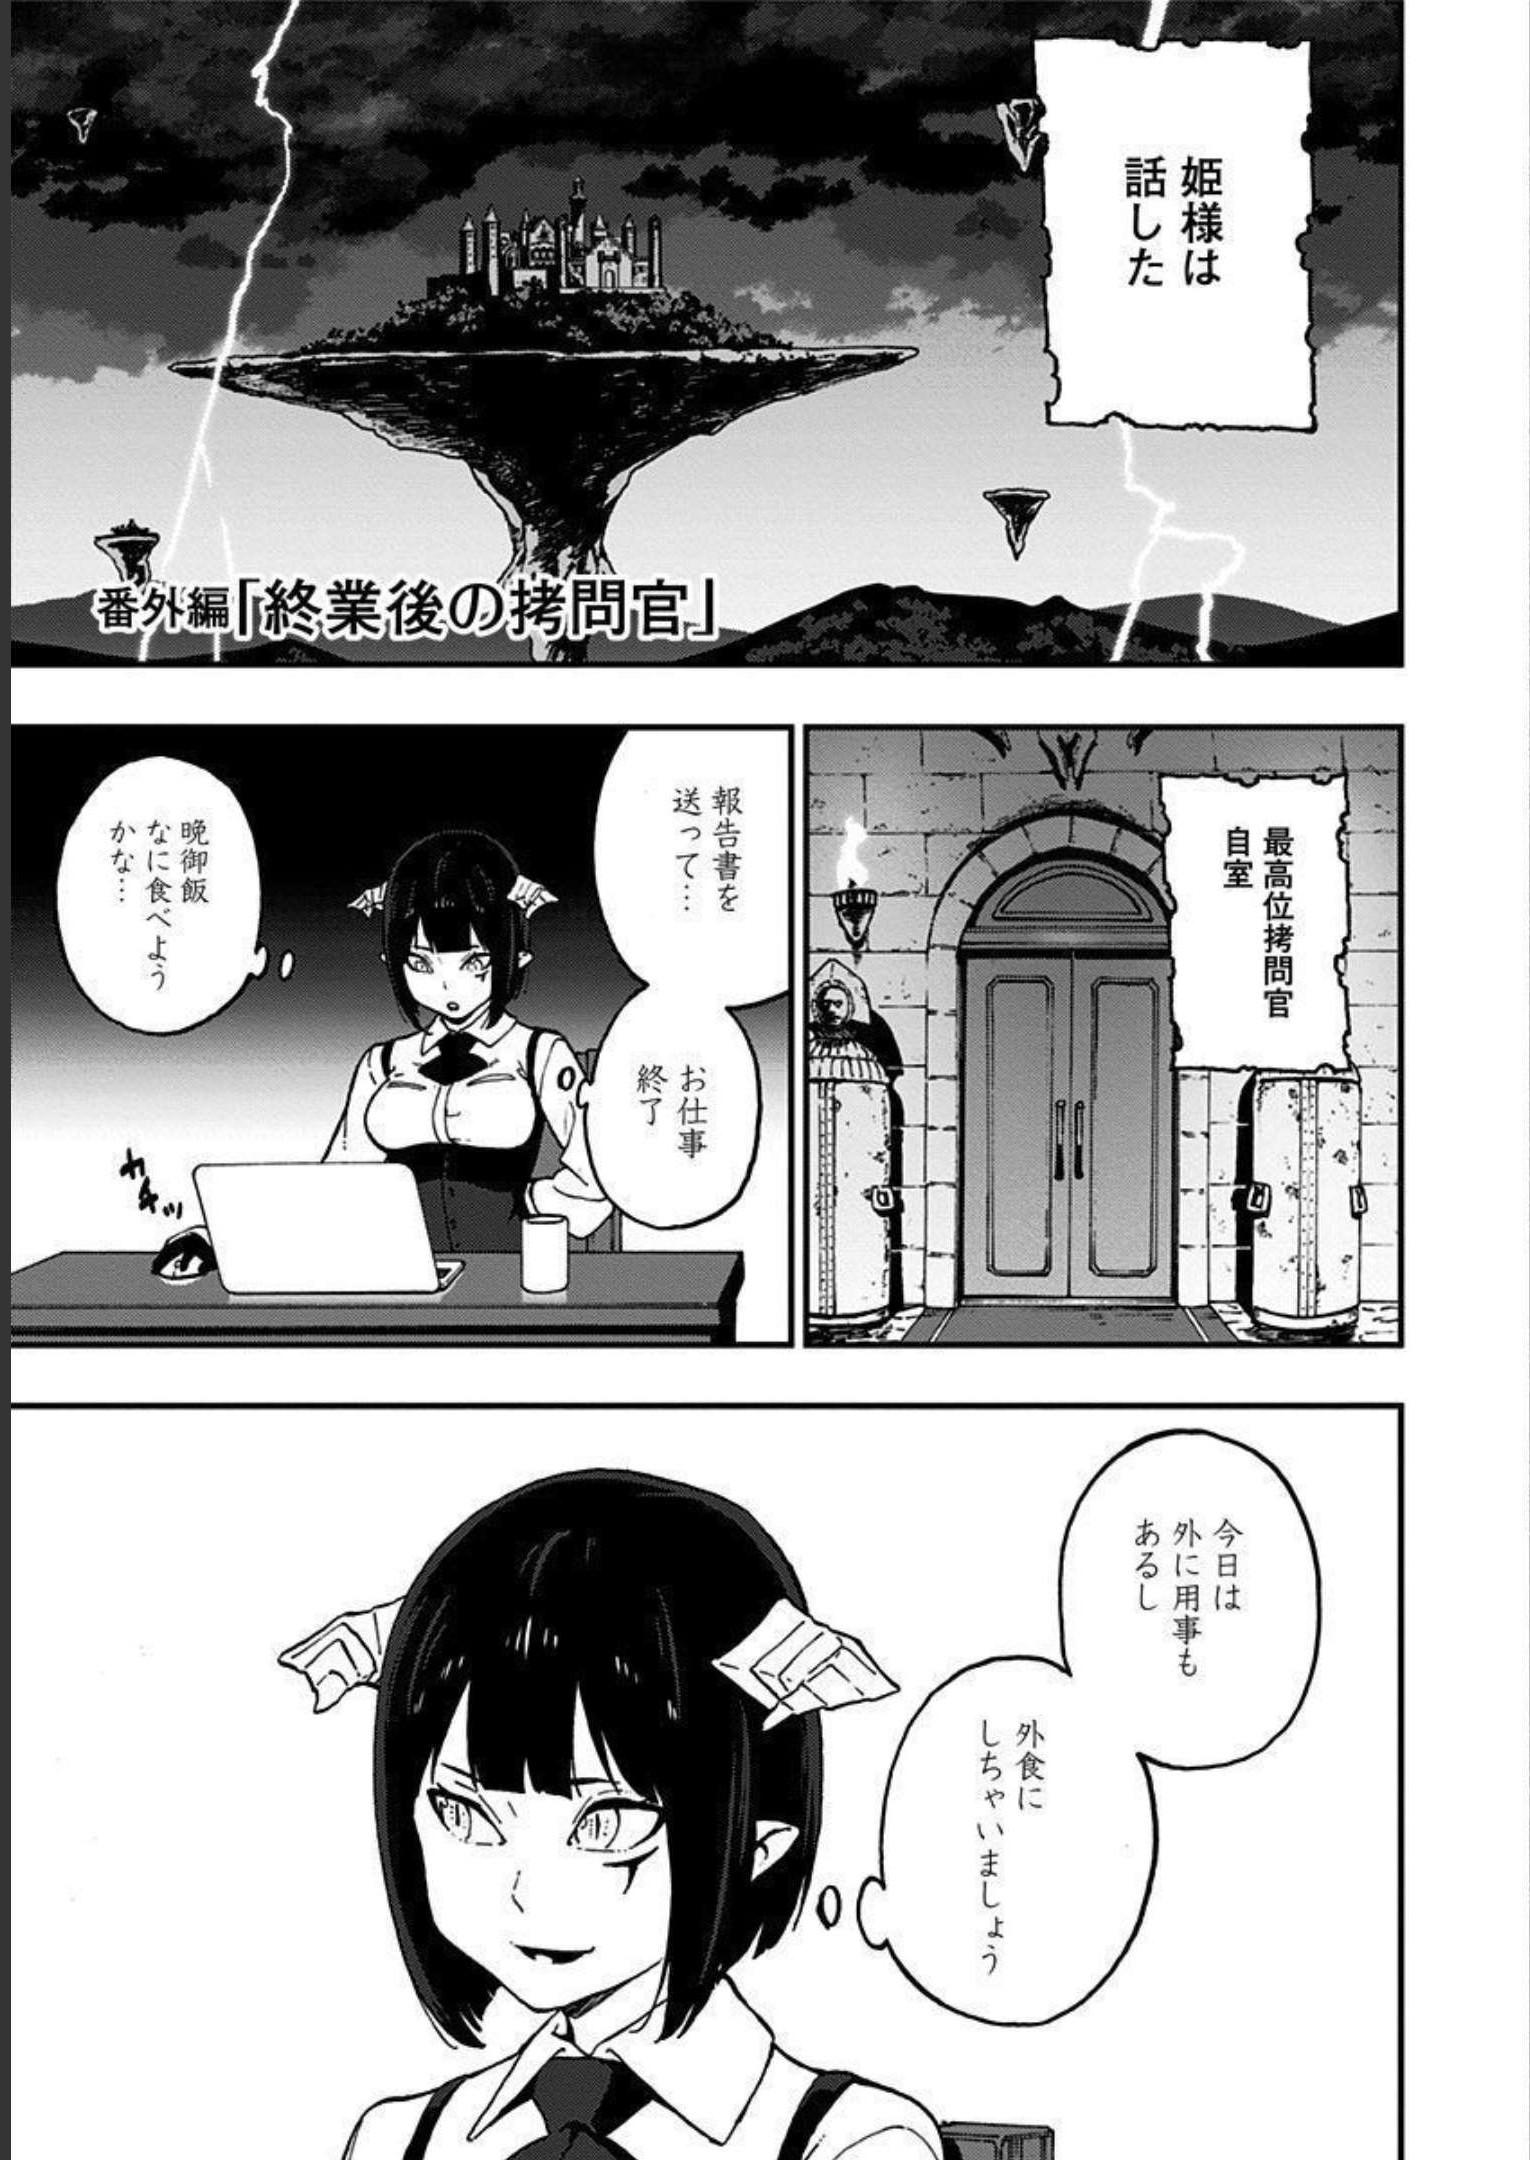 Hime-sama, Goumon no Jikan desu - Chapter 28.5-2 - Page 1